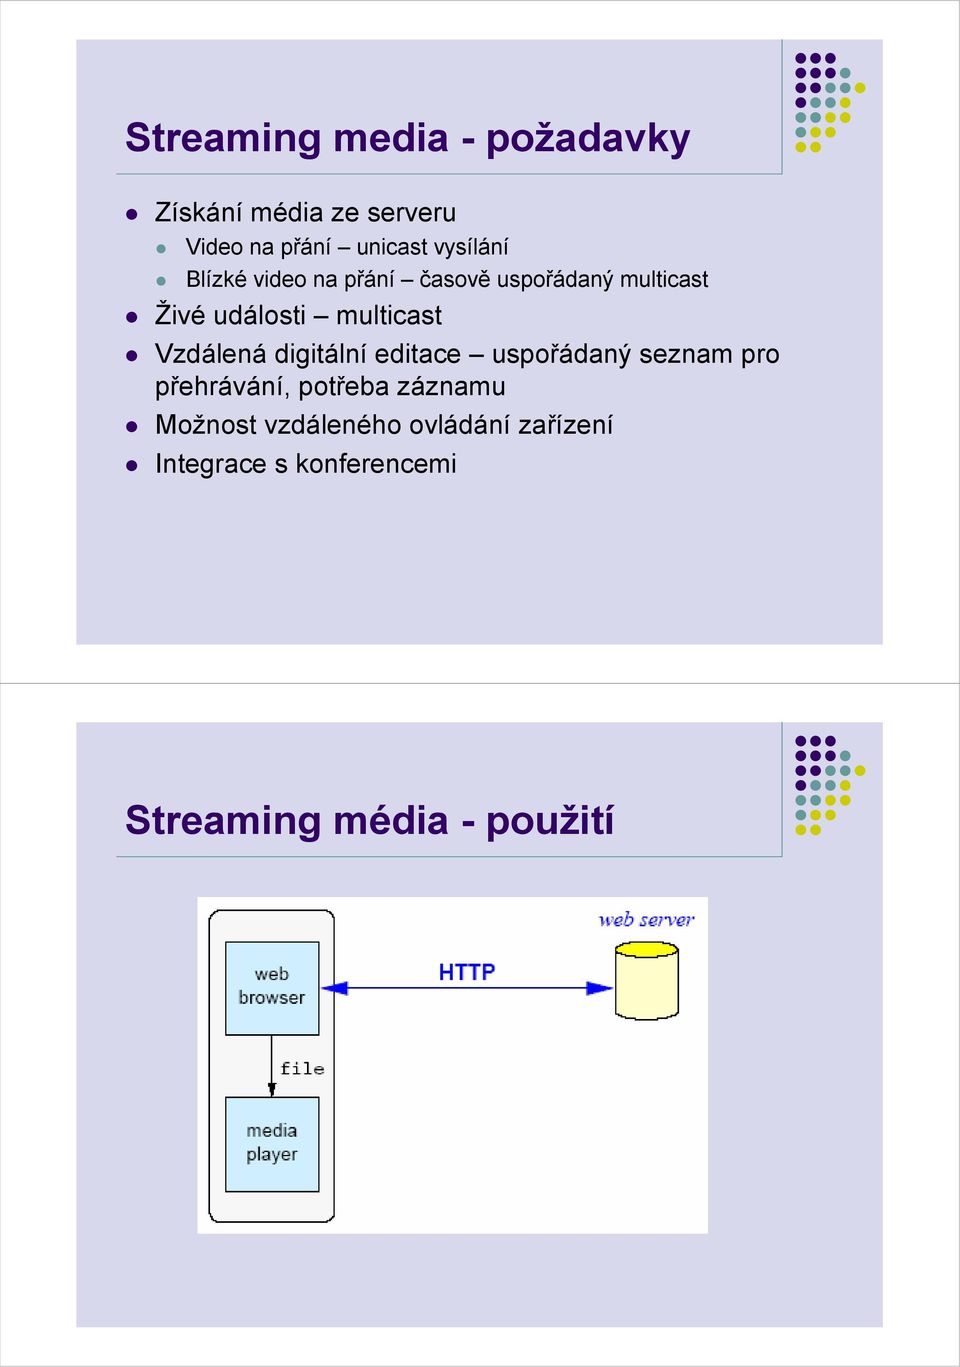 multicast Vzdálená digitální editace uspořádaný seznam pro přehrávání, potřeba